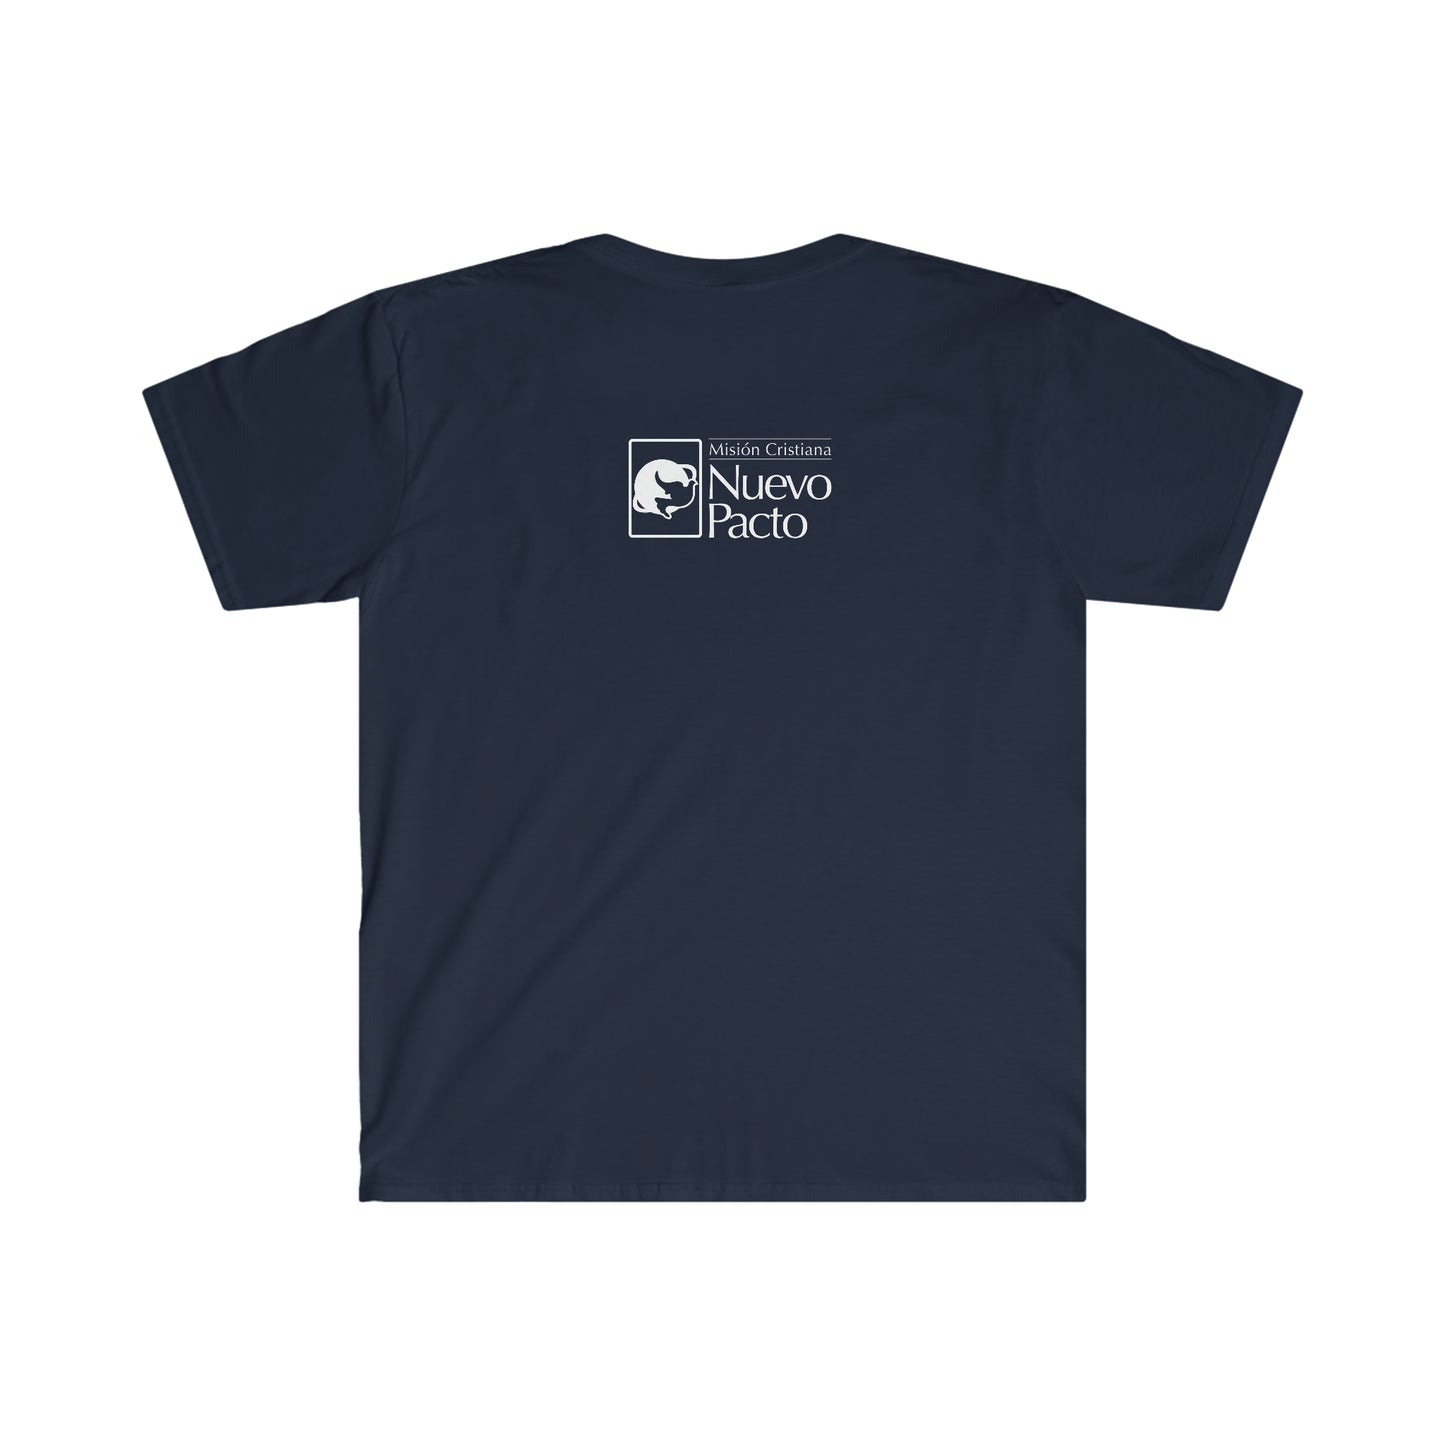 Camiseta unisex de estilo suave para evangelismo